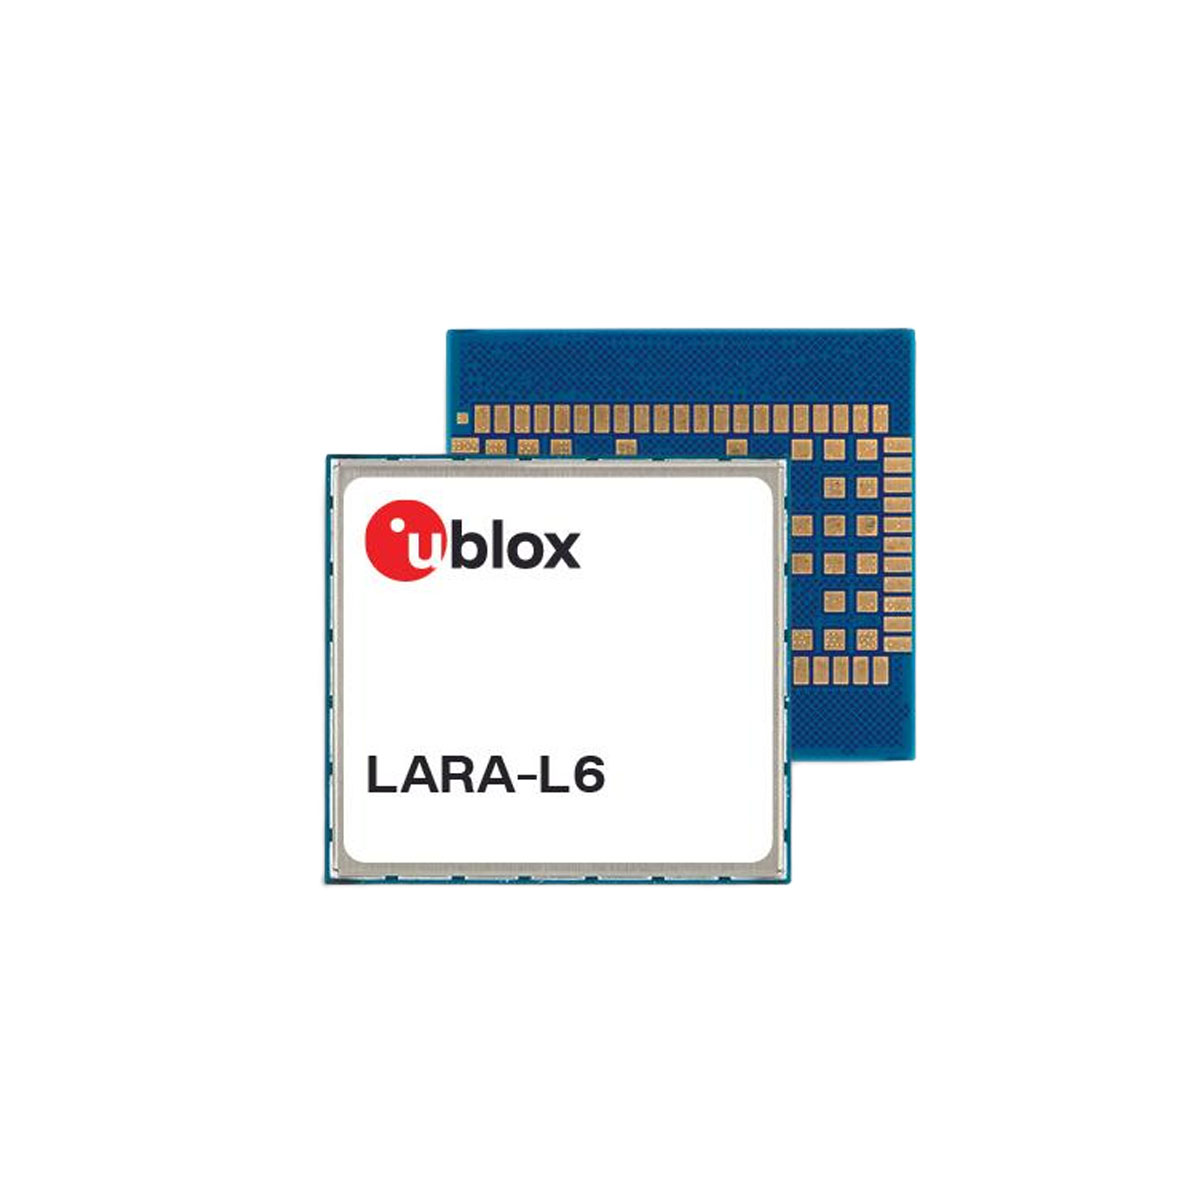 The model is LARA-L6004-01B